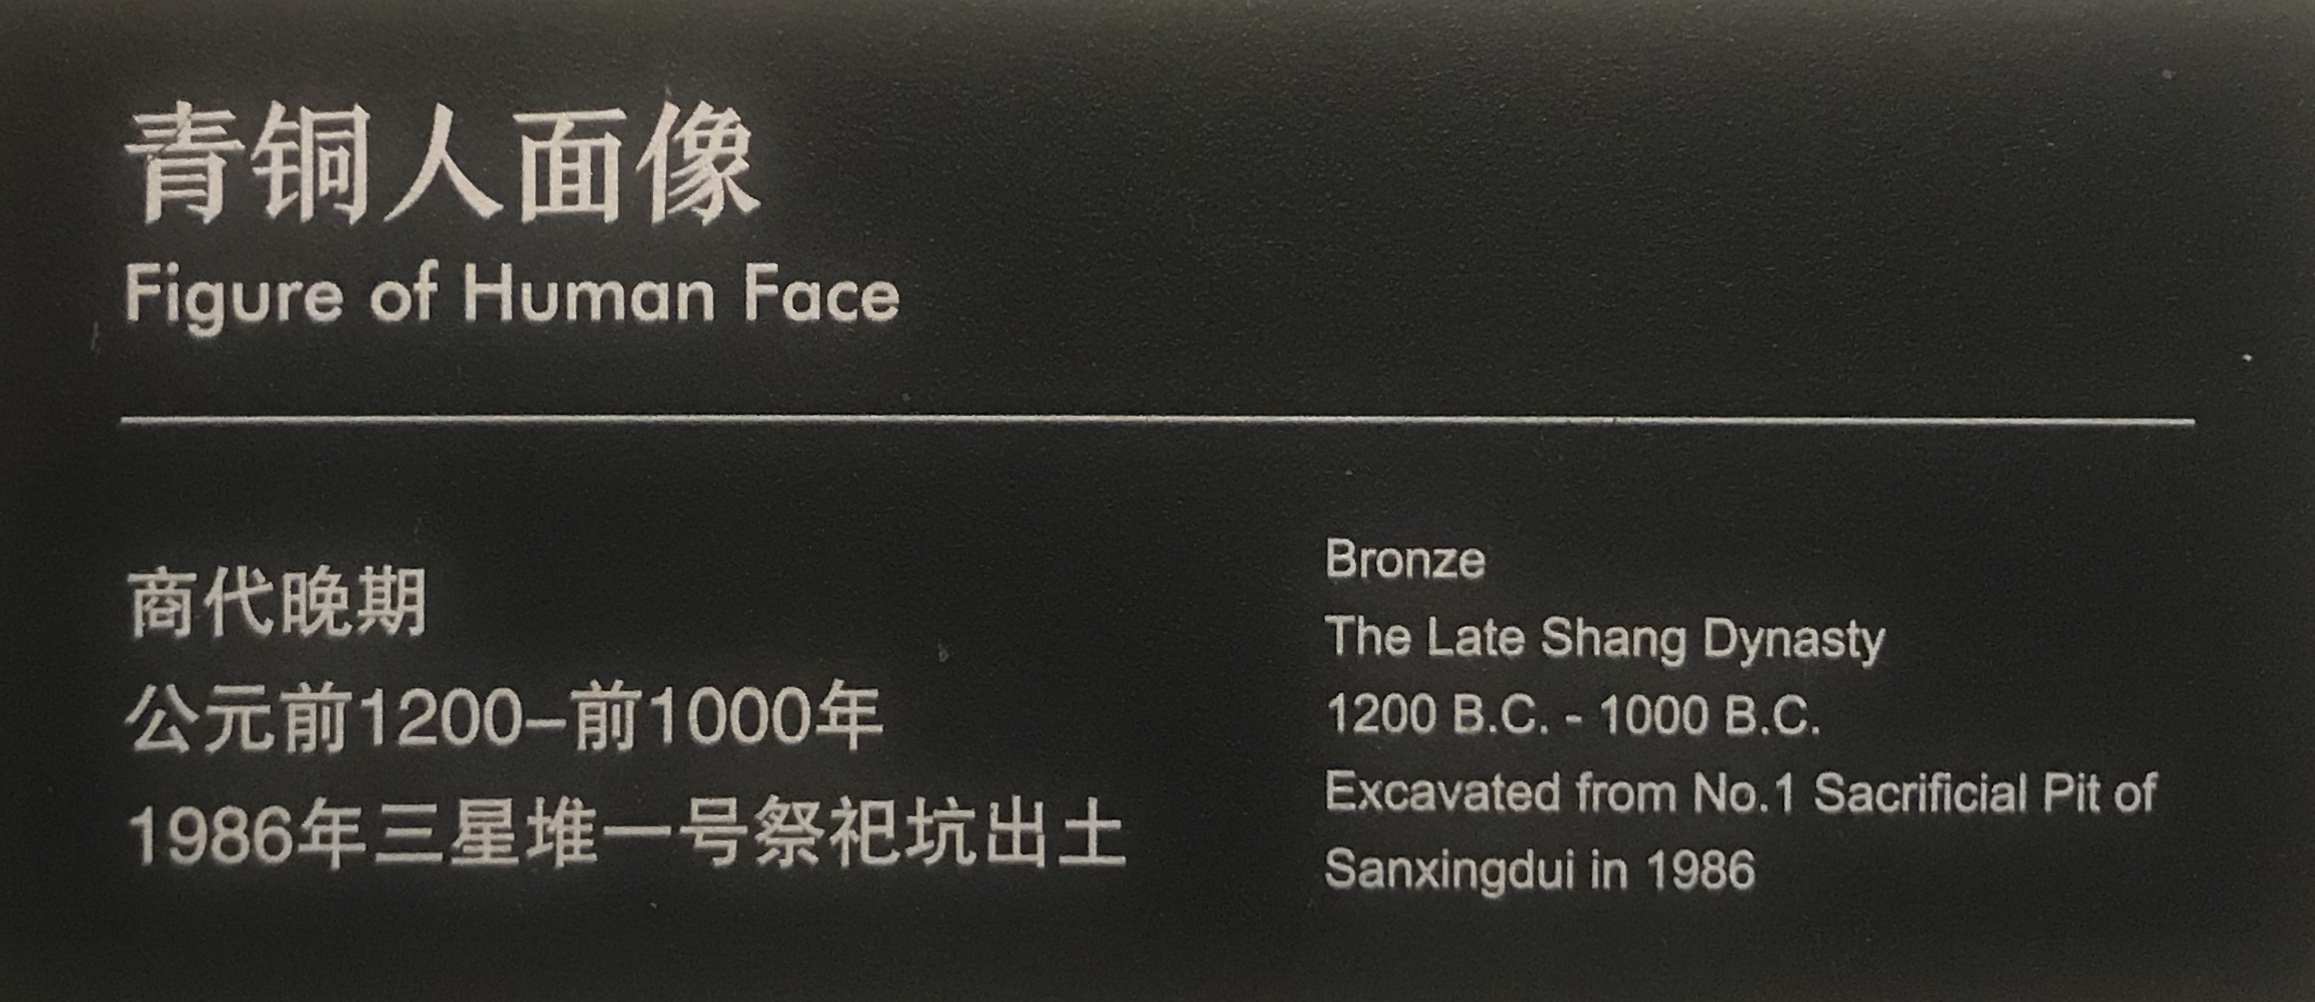  青銅人面具4-青銅器館-三星堆博物館-広漢市-徳陽市-四川省